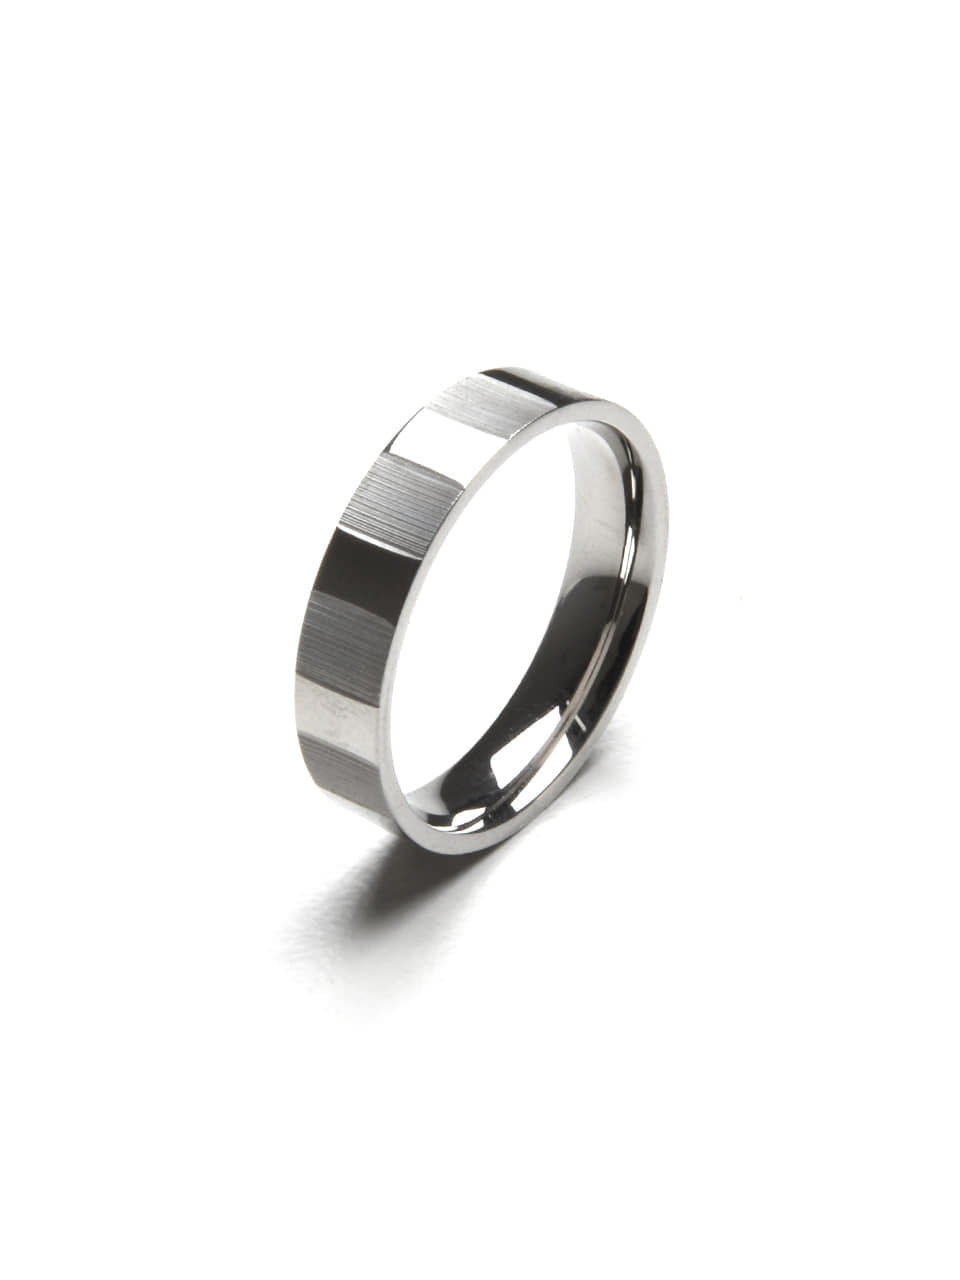 [재윤 착용]BA026 [Surgical steel] Stripe pattern ring